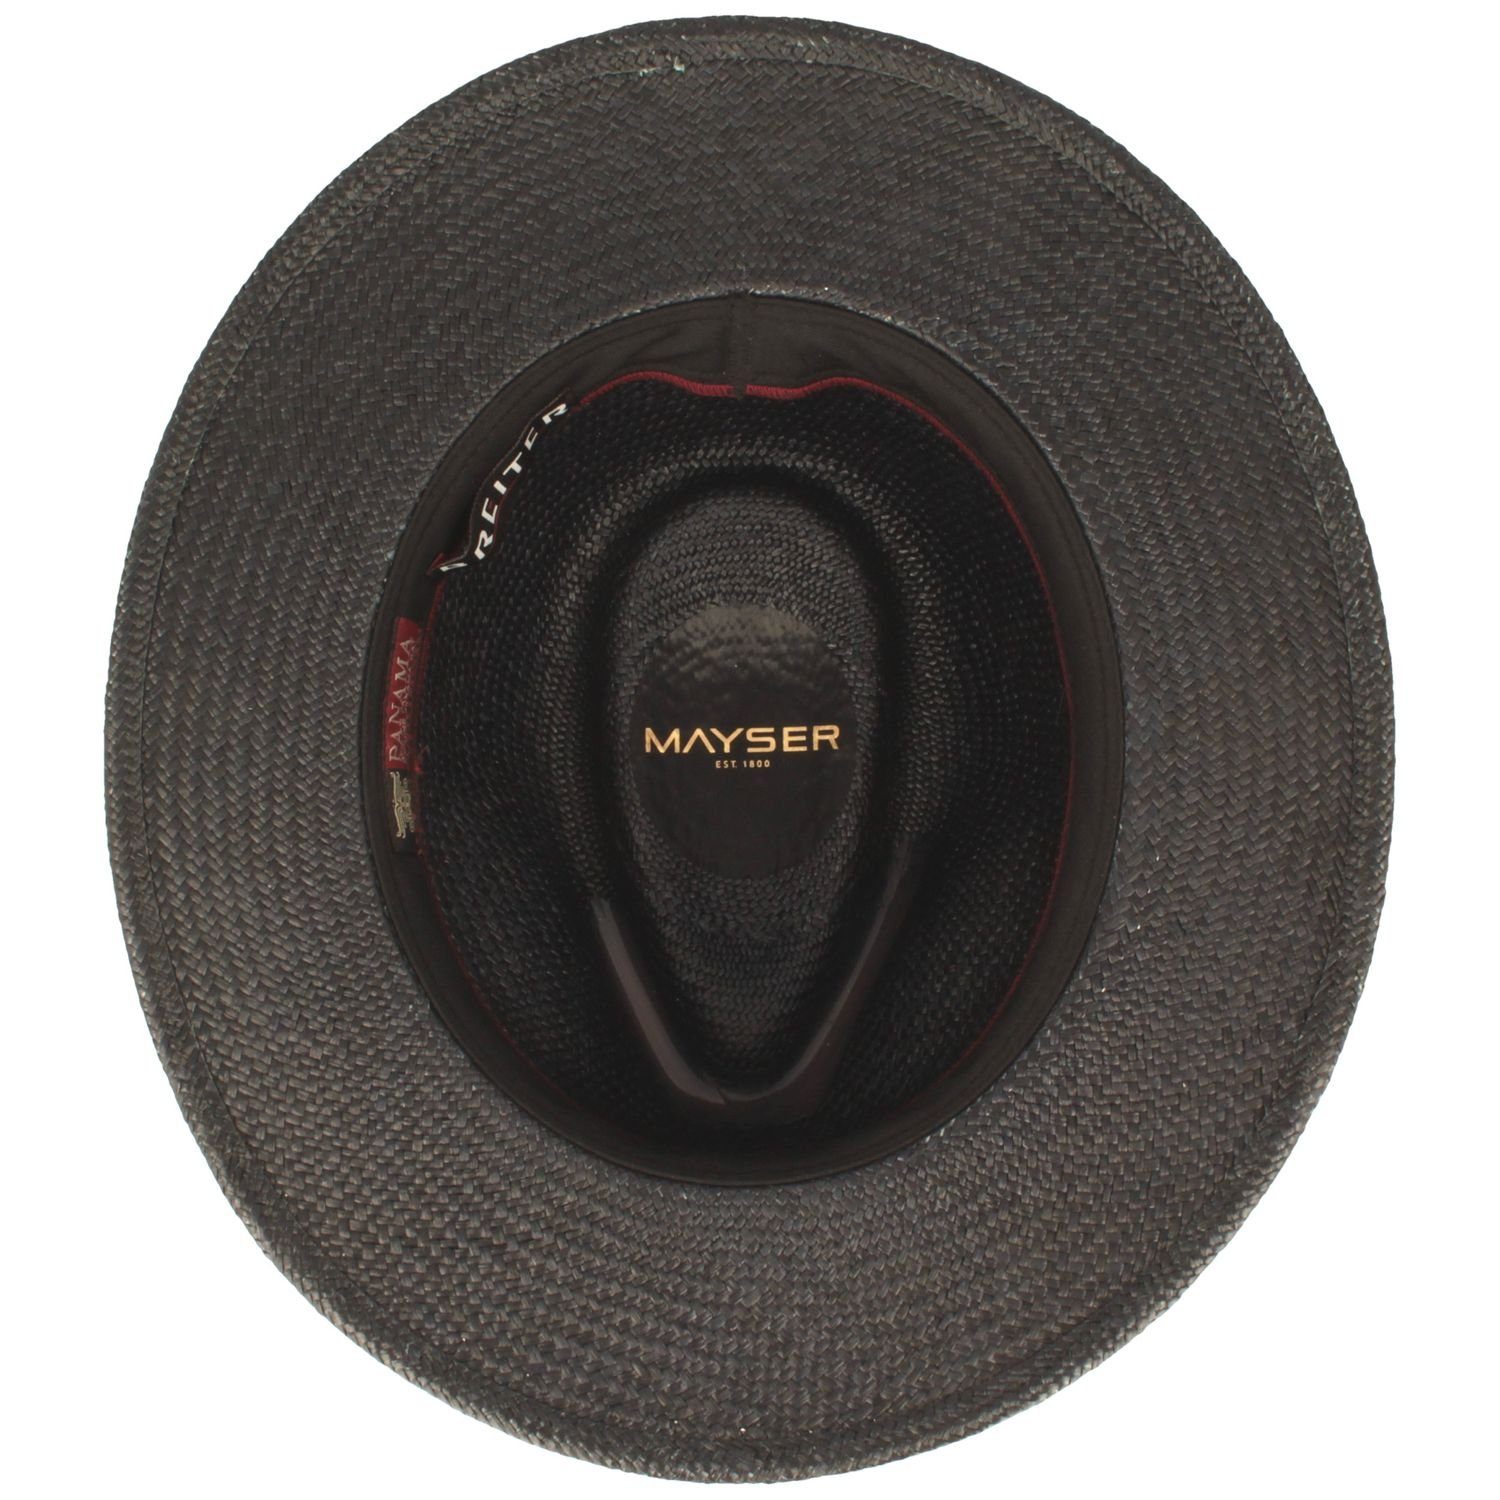 Mayser Strohhut hochwertiger Traveller-Panamahut 8001 schwarz Gero